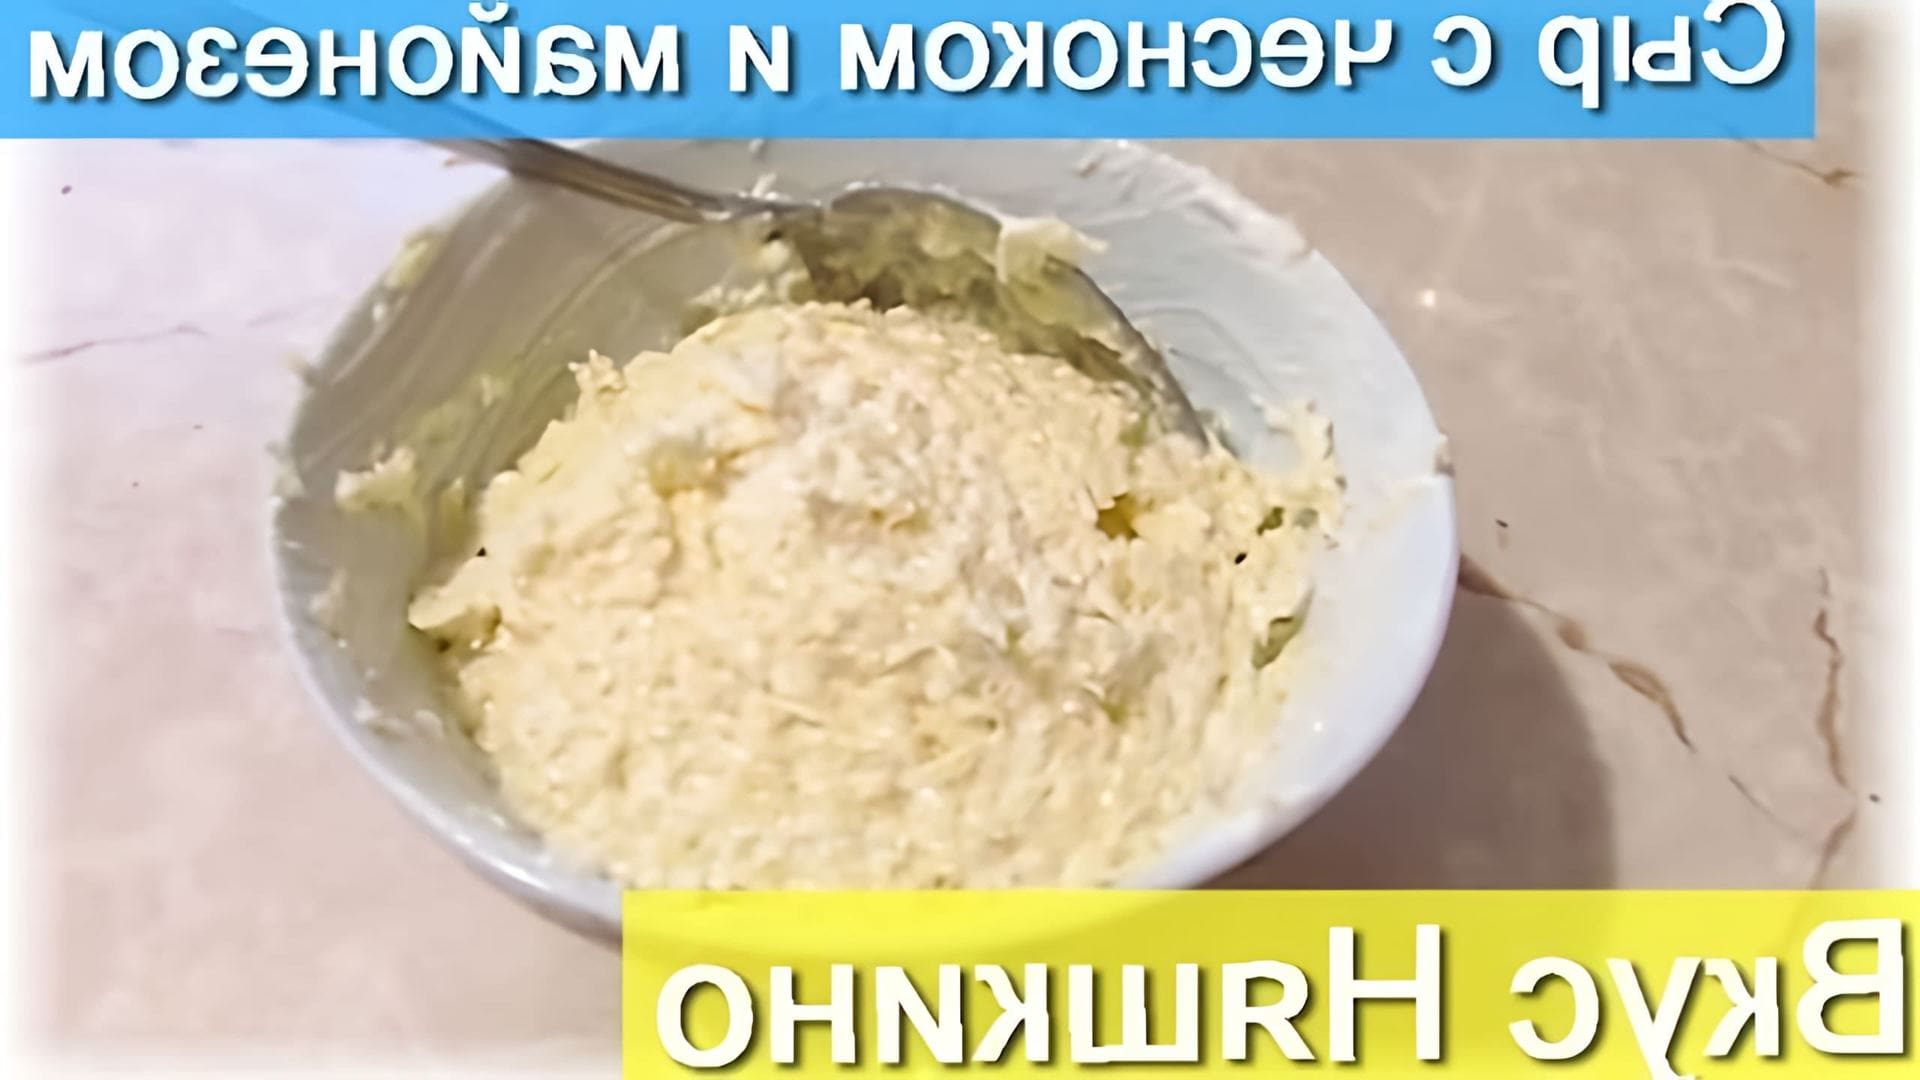 В данном видео демонстрируется процесс приготовления сыра с чесноком и майонезом